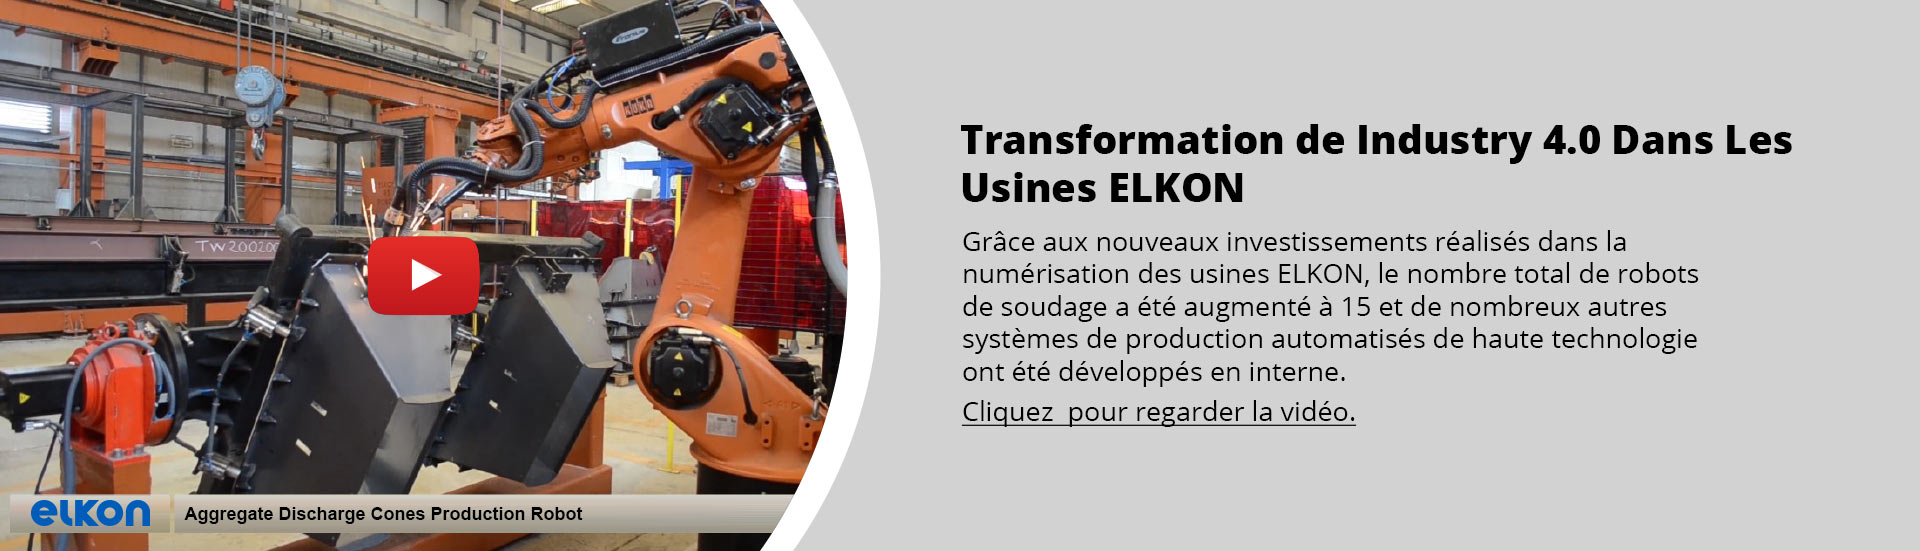 La révolution industrielle 4.0 dans les usines ELKON